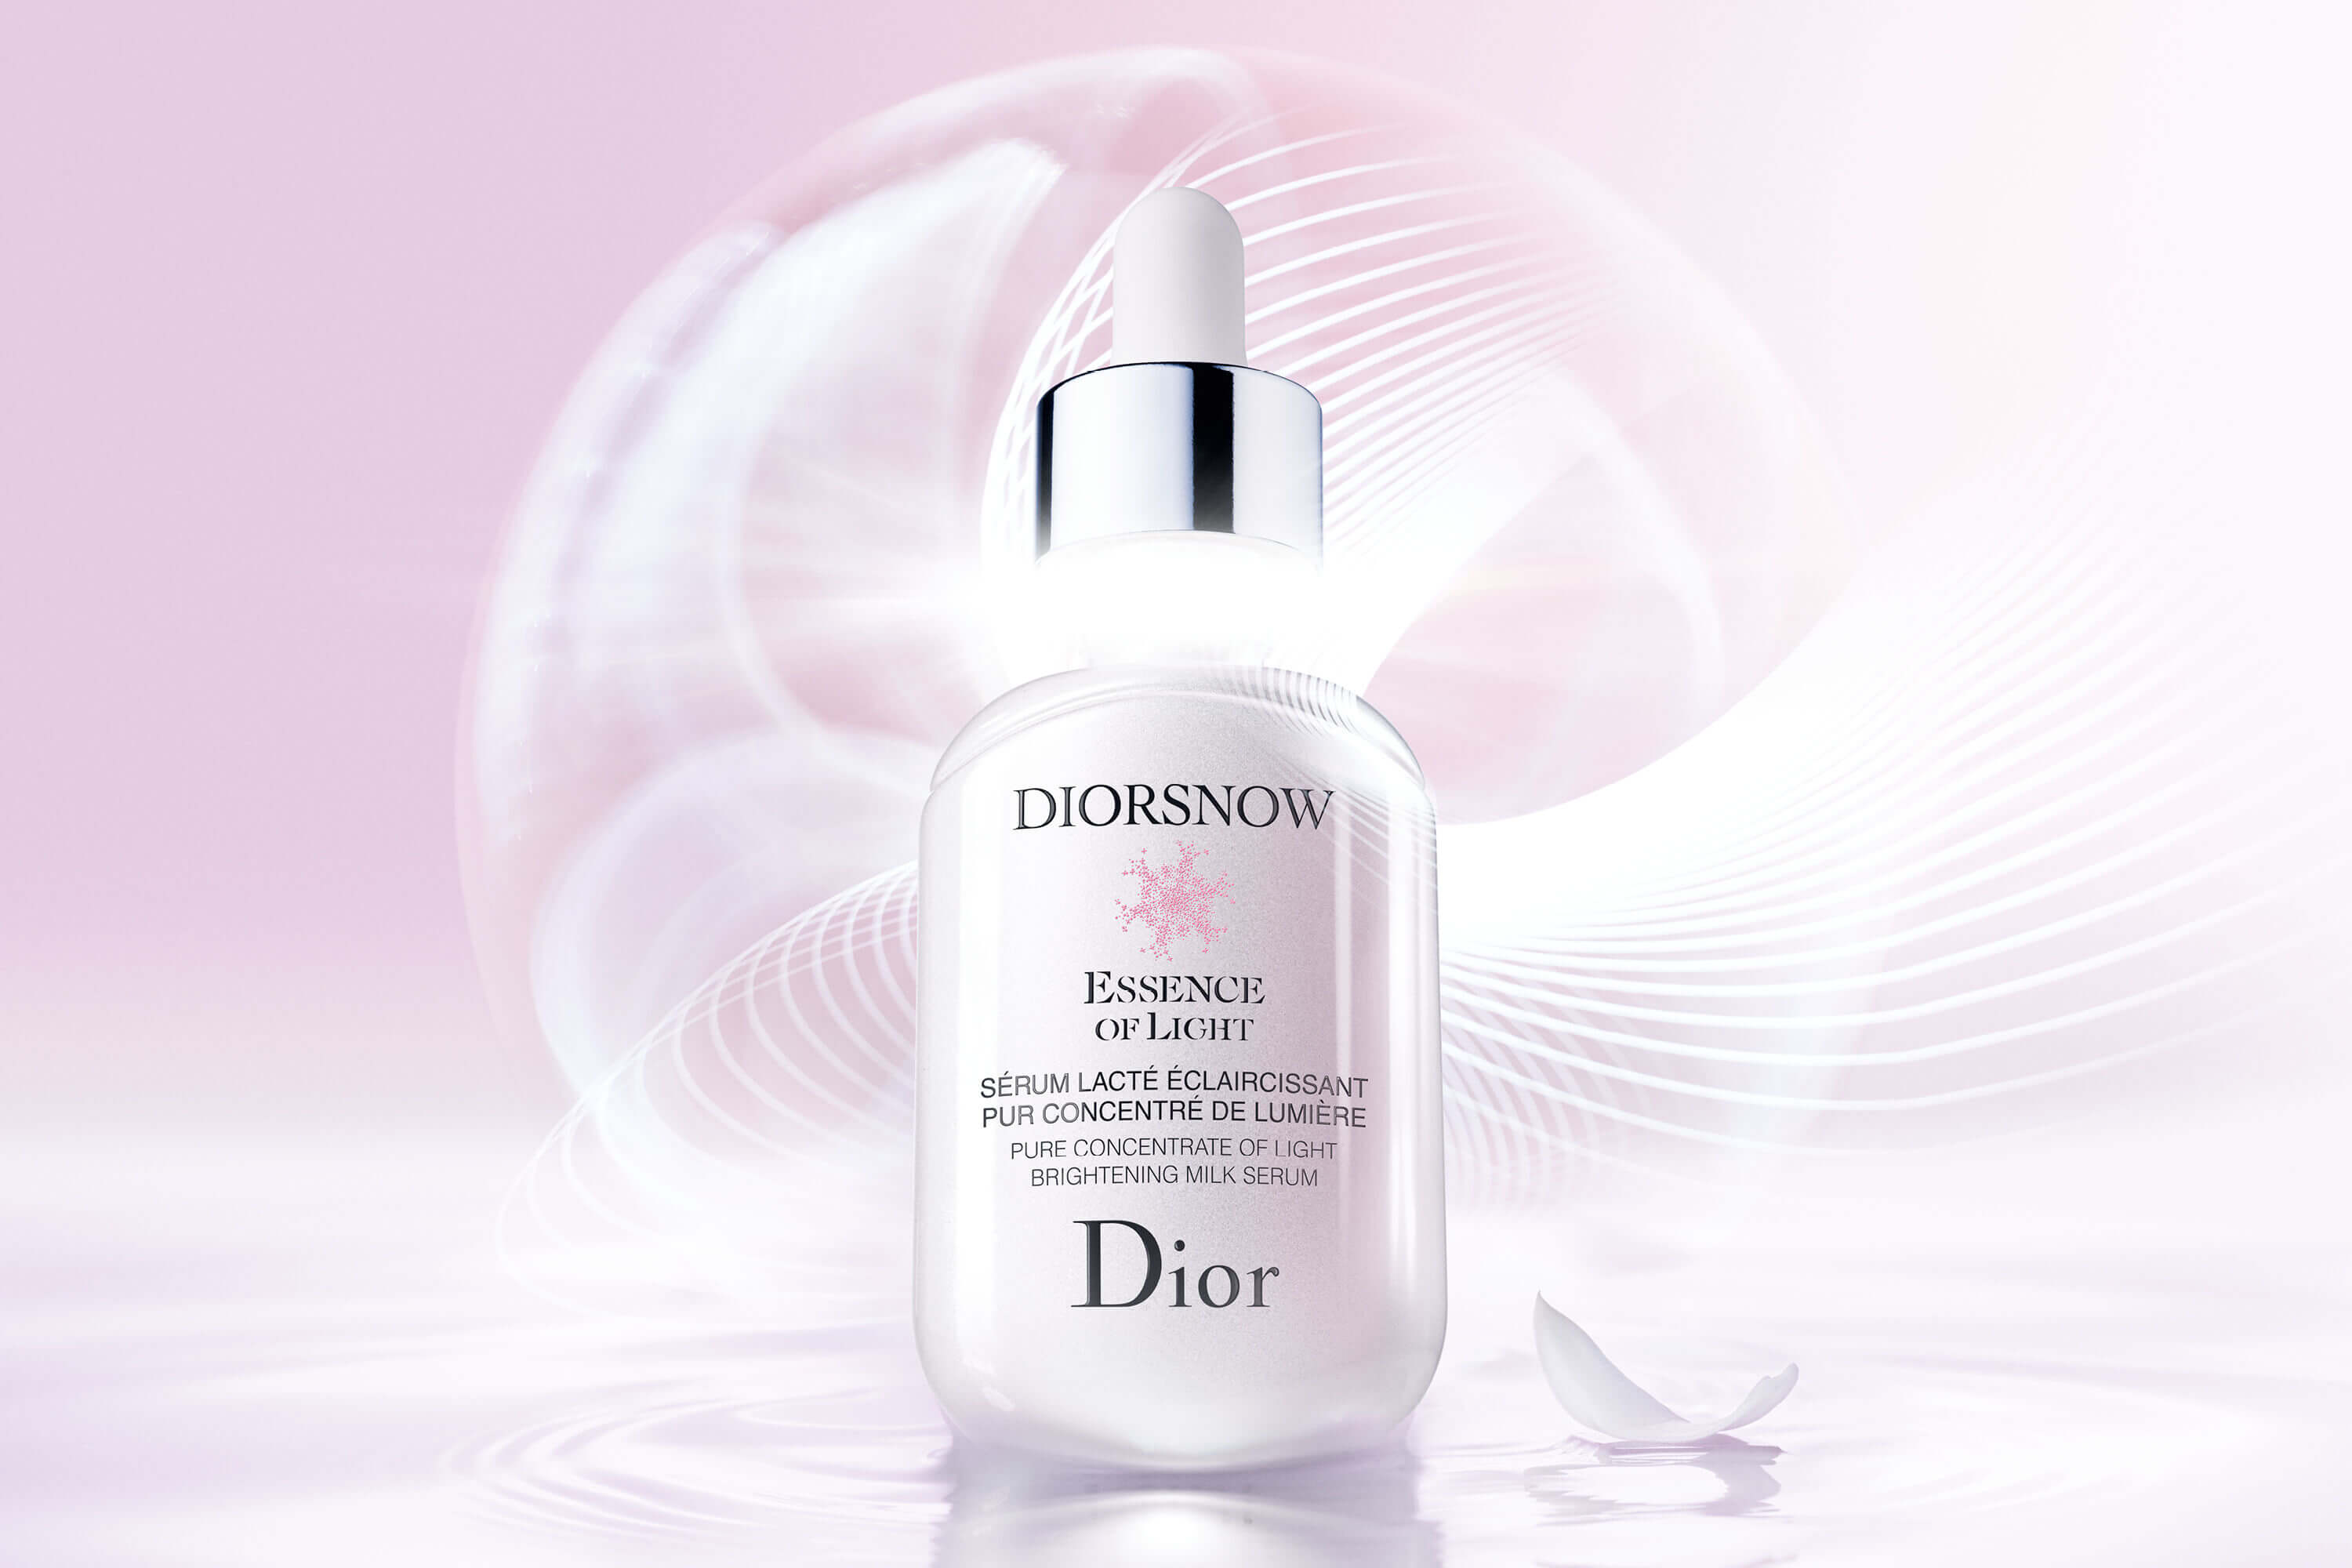 Dior Snow Essence of Light Pure Concentrate of Light Brightening Milk Serum เซรั่มสูตรใหม่ที่เหมาะสำหรับผิวของสาวเอเชียโดยเฉพาะ Dior ได้คิดค้นเซรั่มสูตรใหม่ที่ทรงประสิทธิภาพในการฟื้นฟูผิวของสาวเอเชียได้อย่างล้ำลึก โดยจะช่วยปรับผิวให้กระจ่างใส เนียนเรียบ และมีสุขภาพดีขึ้น 